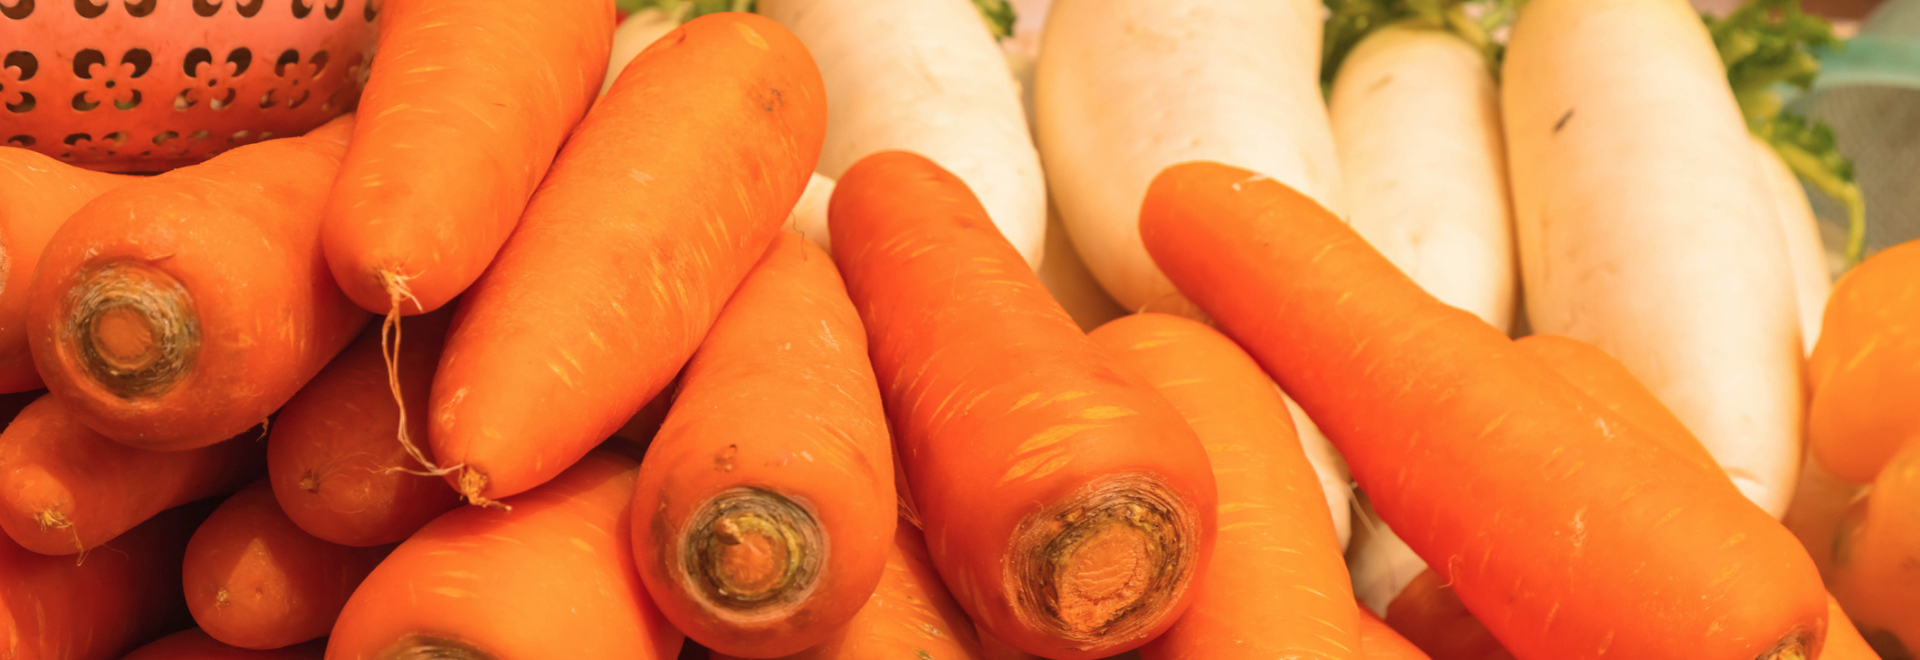 carrot-green-radish-daikon-health-benefits-recipes